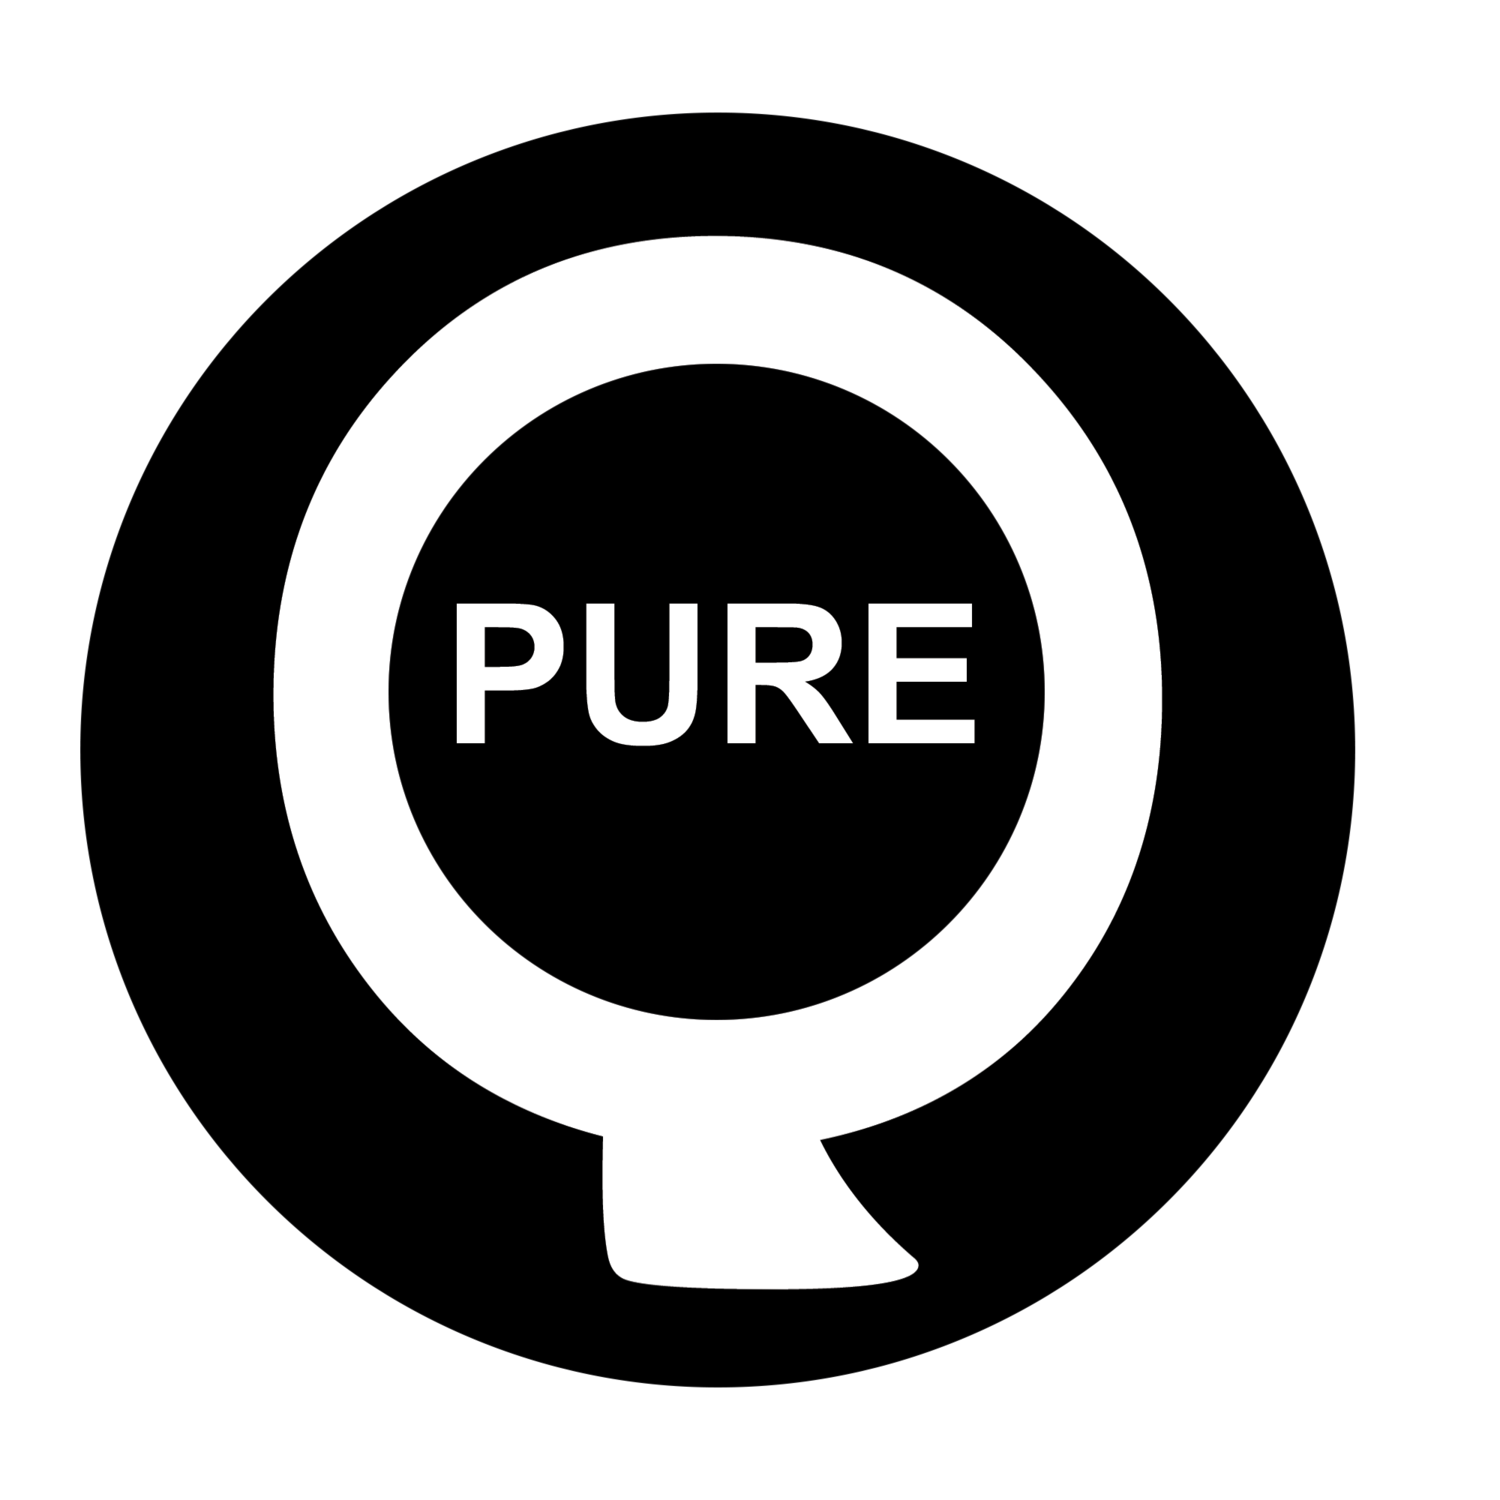 https://images.squarespace-cdn.com/content/v1/5f1e012e9effce504869a2bc/1595802223996-39GAKJ89UPG40JWBBNIO/PureQ+logo.png?format=1500w